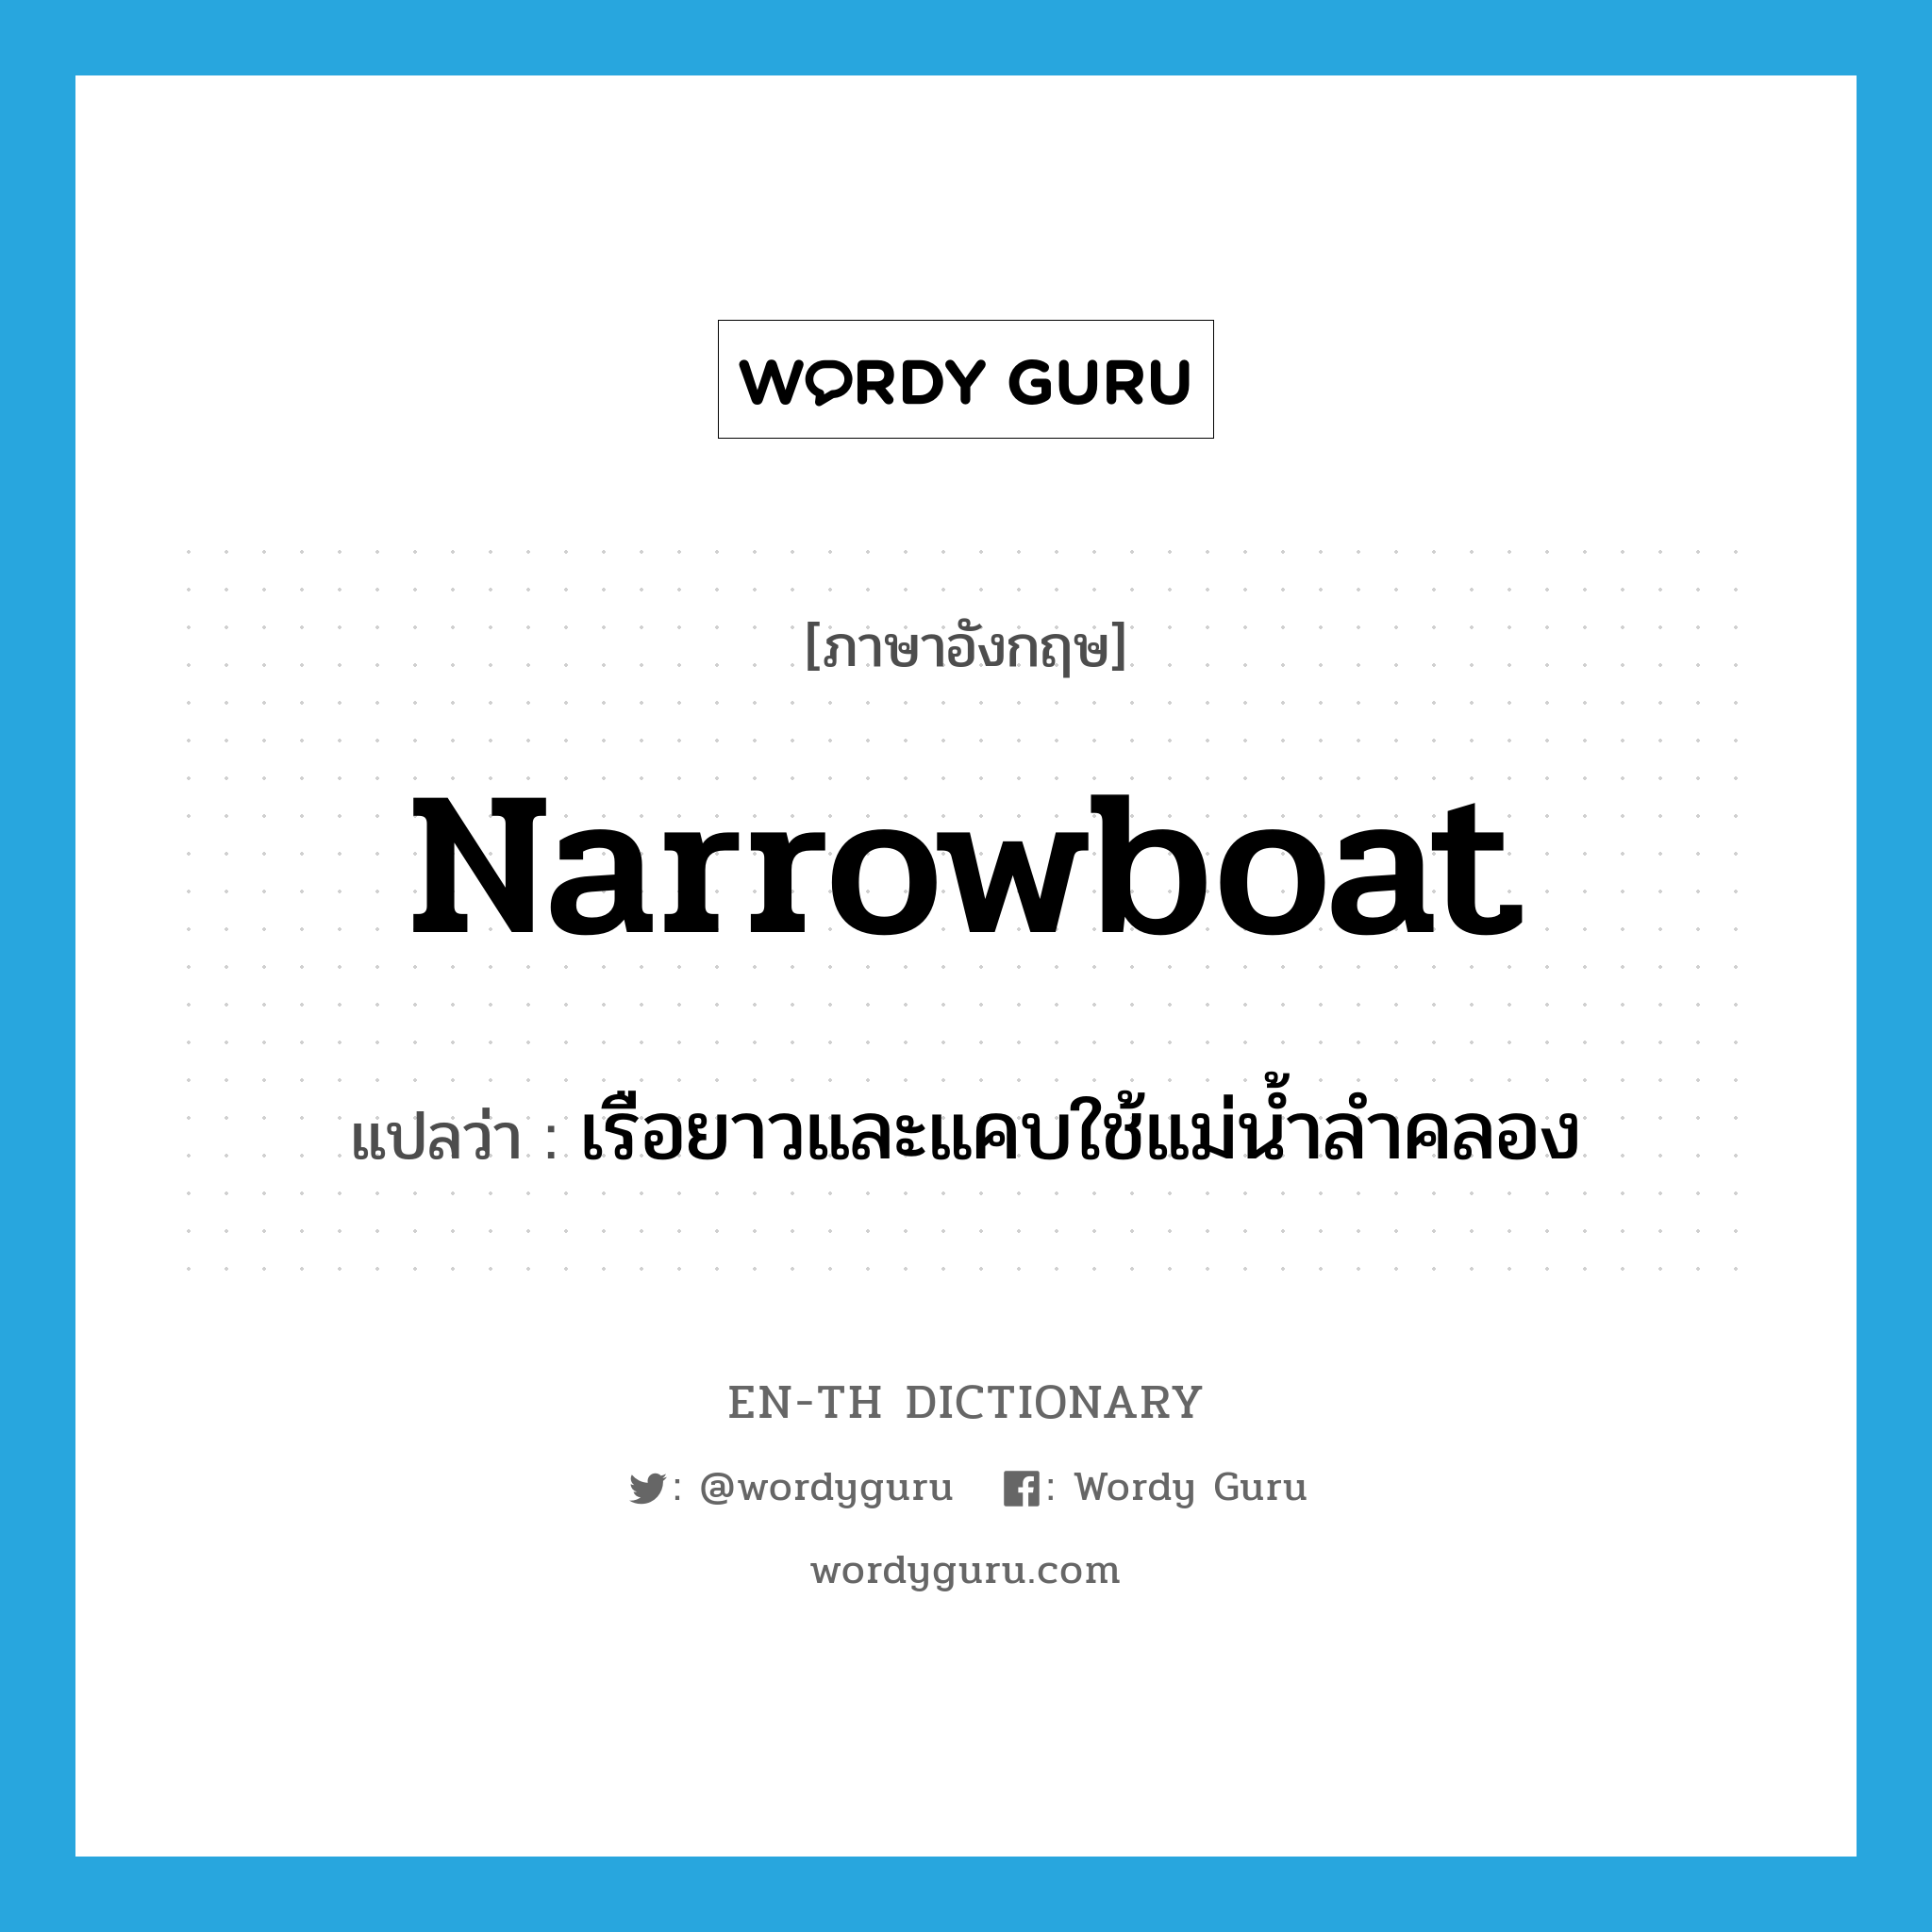 เรือยาวและแคบใช้แม่น้ำลำคลอง ภาษาอังกฤษ?, คำศัพท์ภาษาอังกฤษ เรือยาวและแคบใช้แม่น้ำลำคลอง แปลว่า narrowboat ประเภท N หมวด N